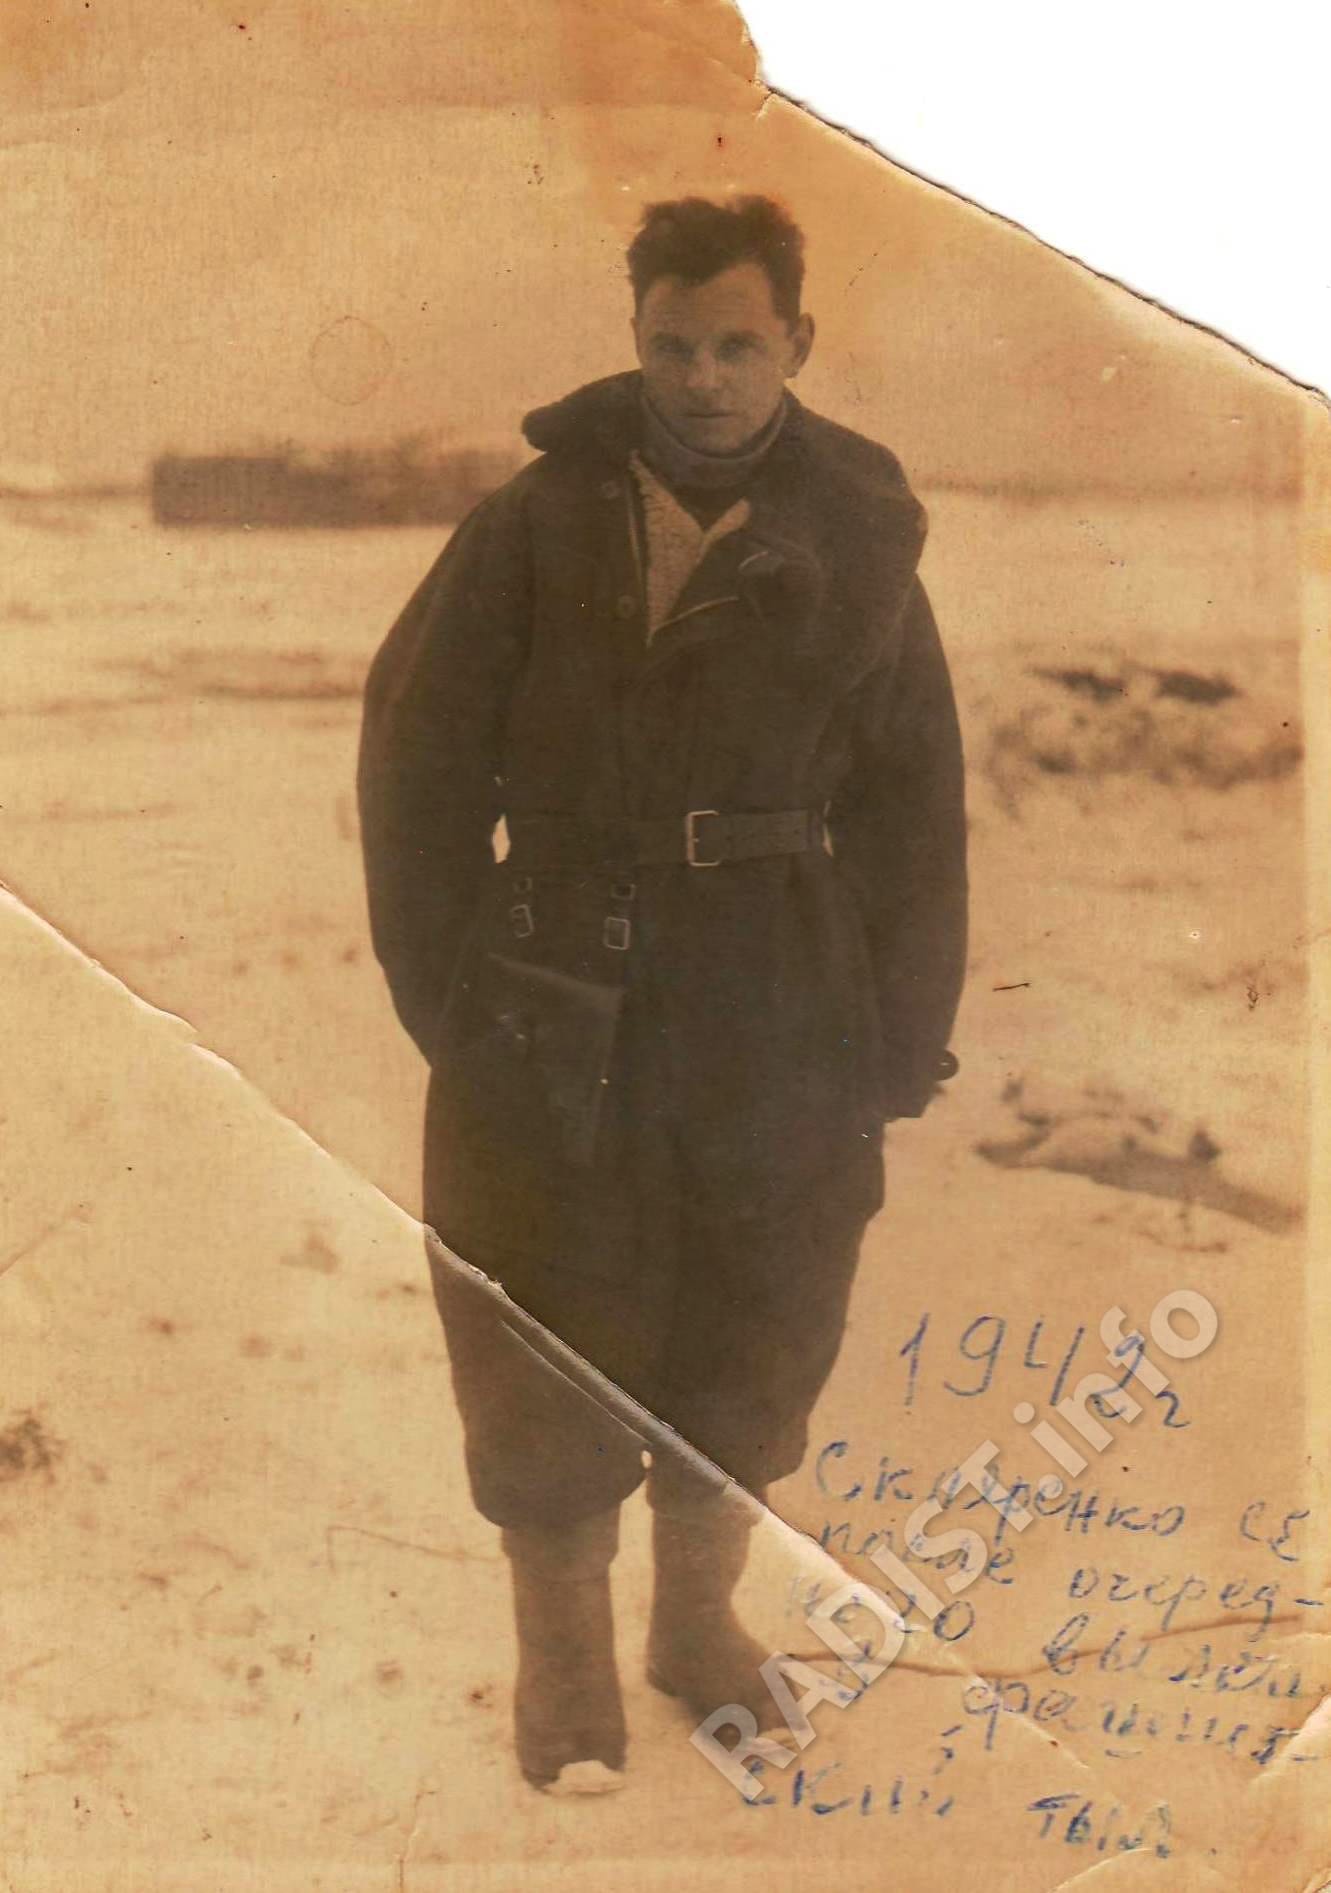 Тапханаев Ользон, стрелок-радист самолета «ПЕ-2»,сбивший два самолета противника, январь 1942 г.